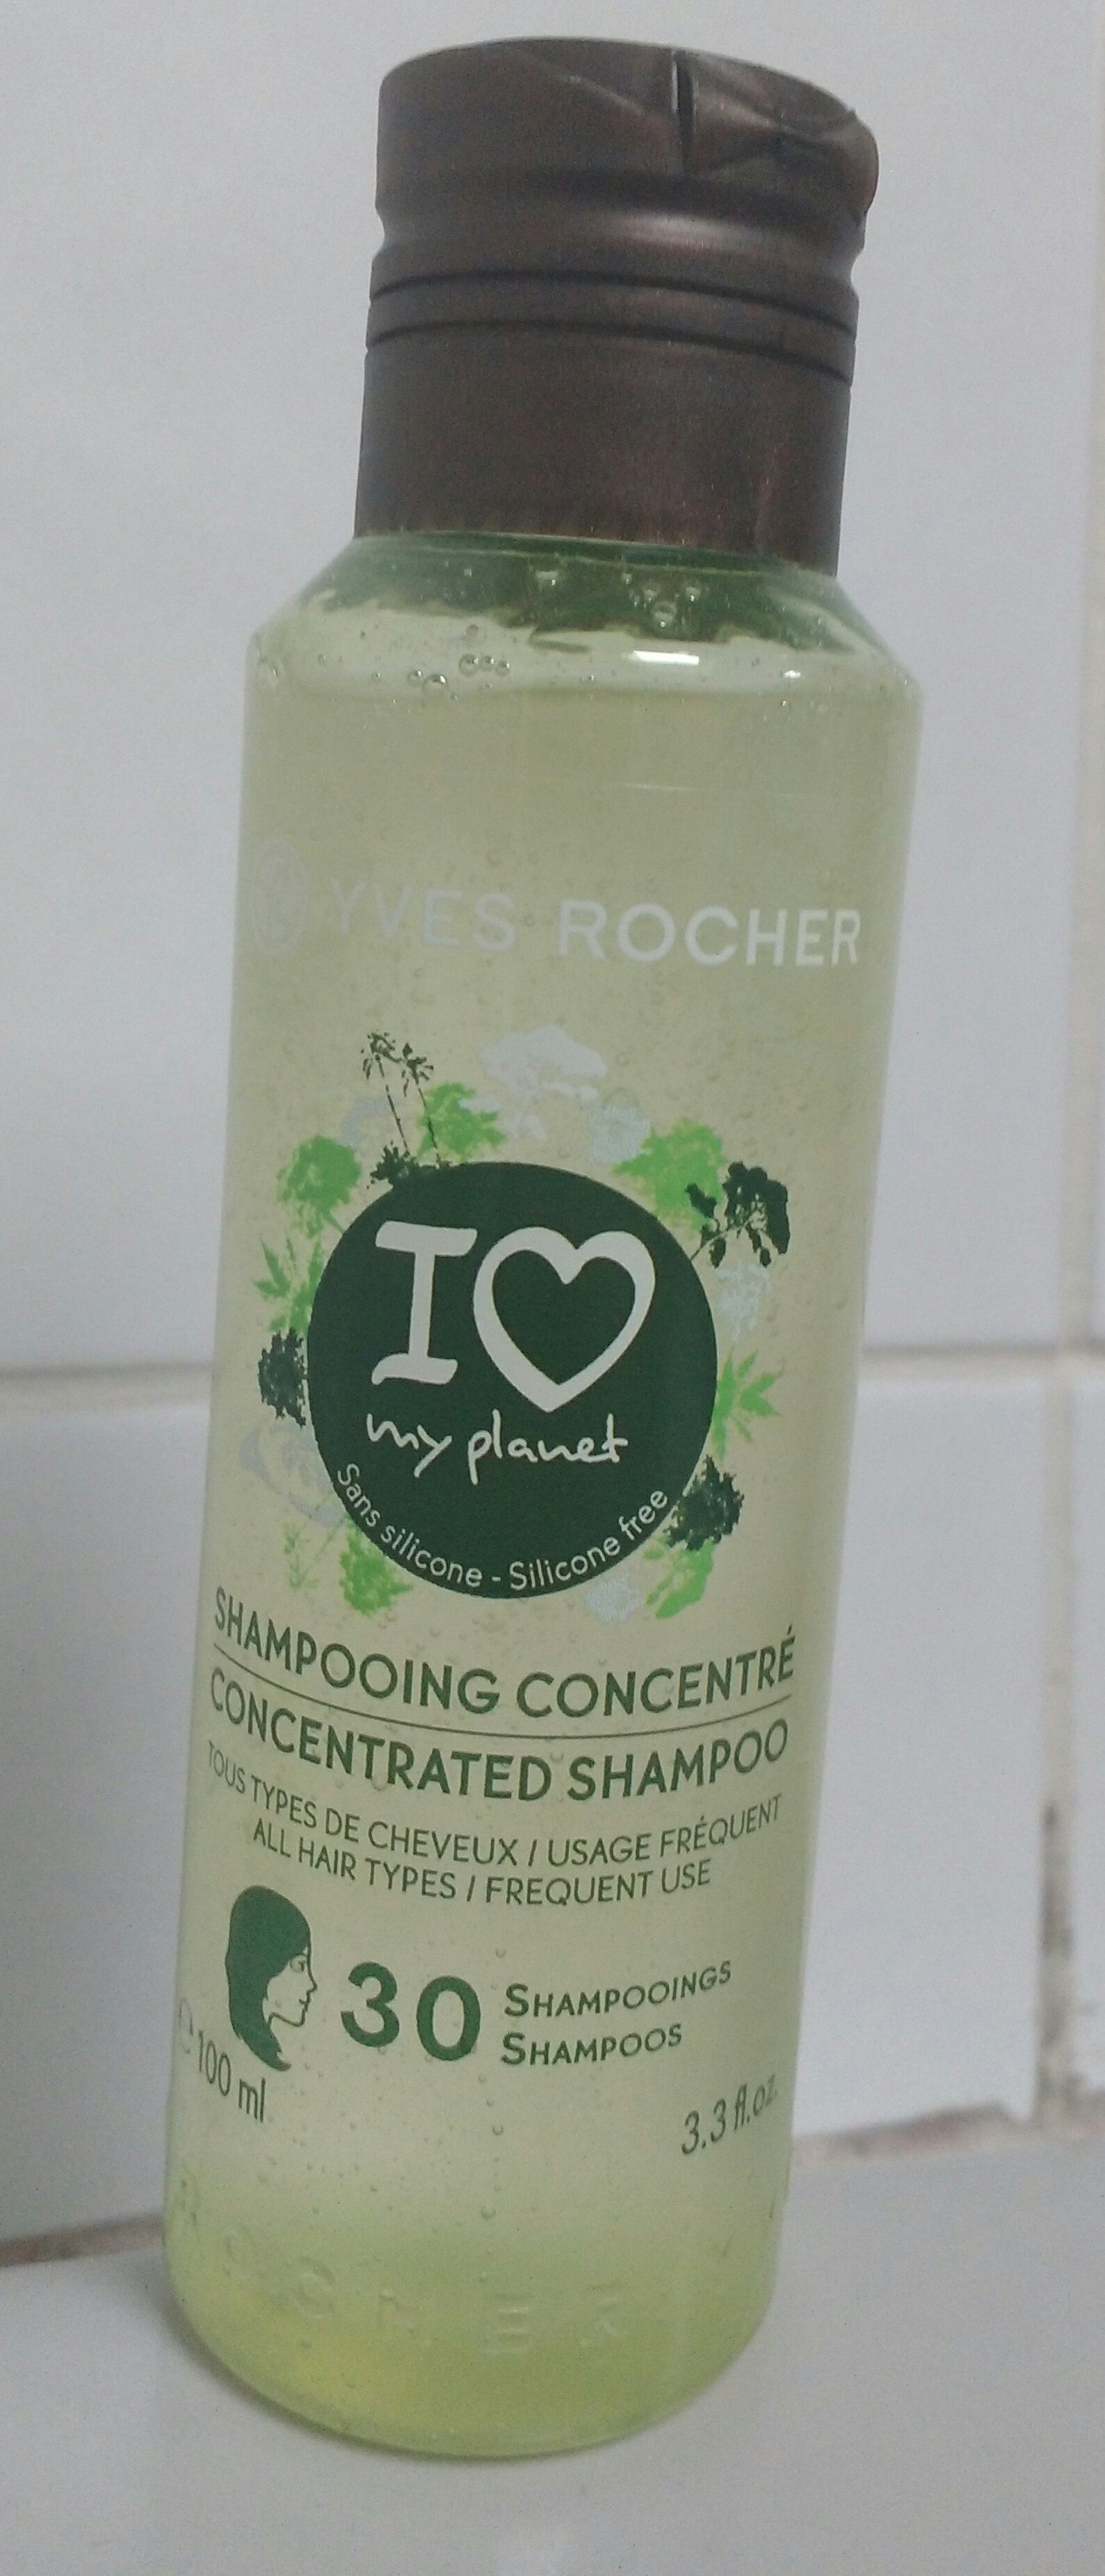 Shampooing concentré - Tous types de cheveux - Продукт - fr